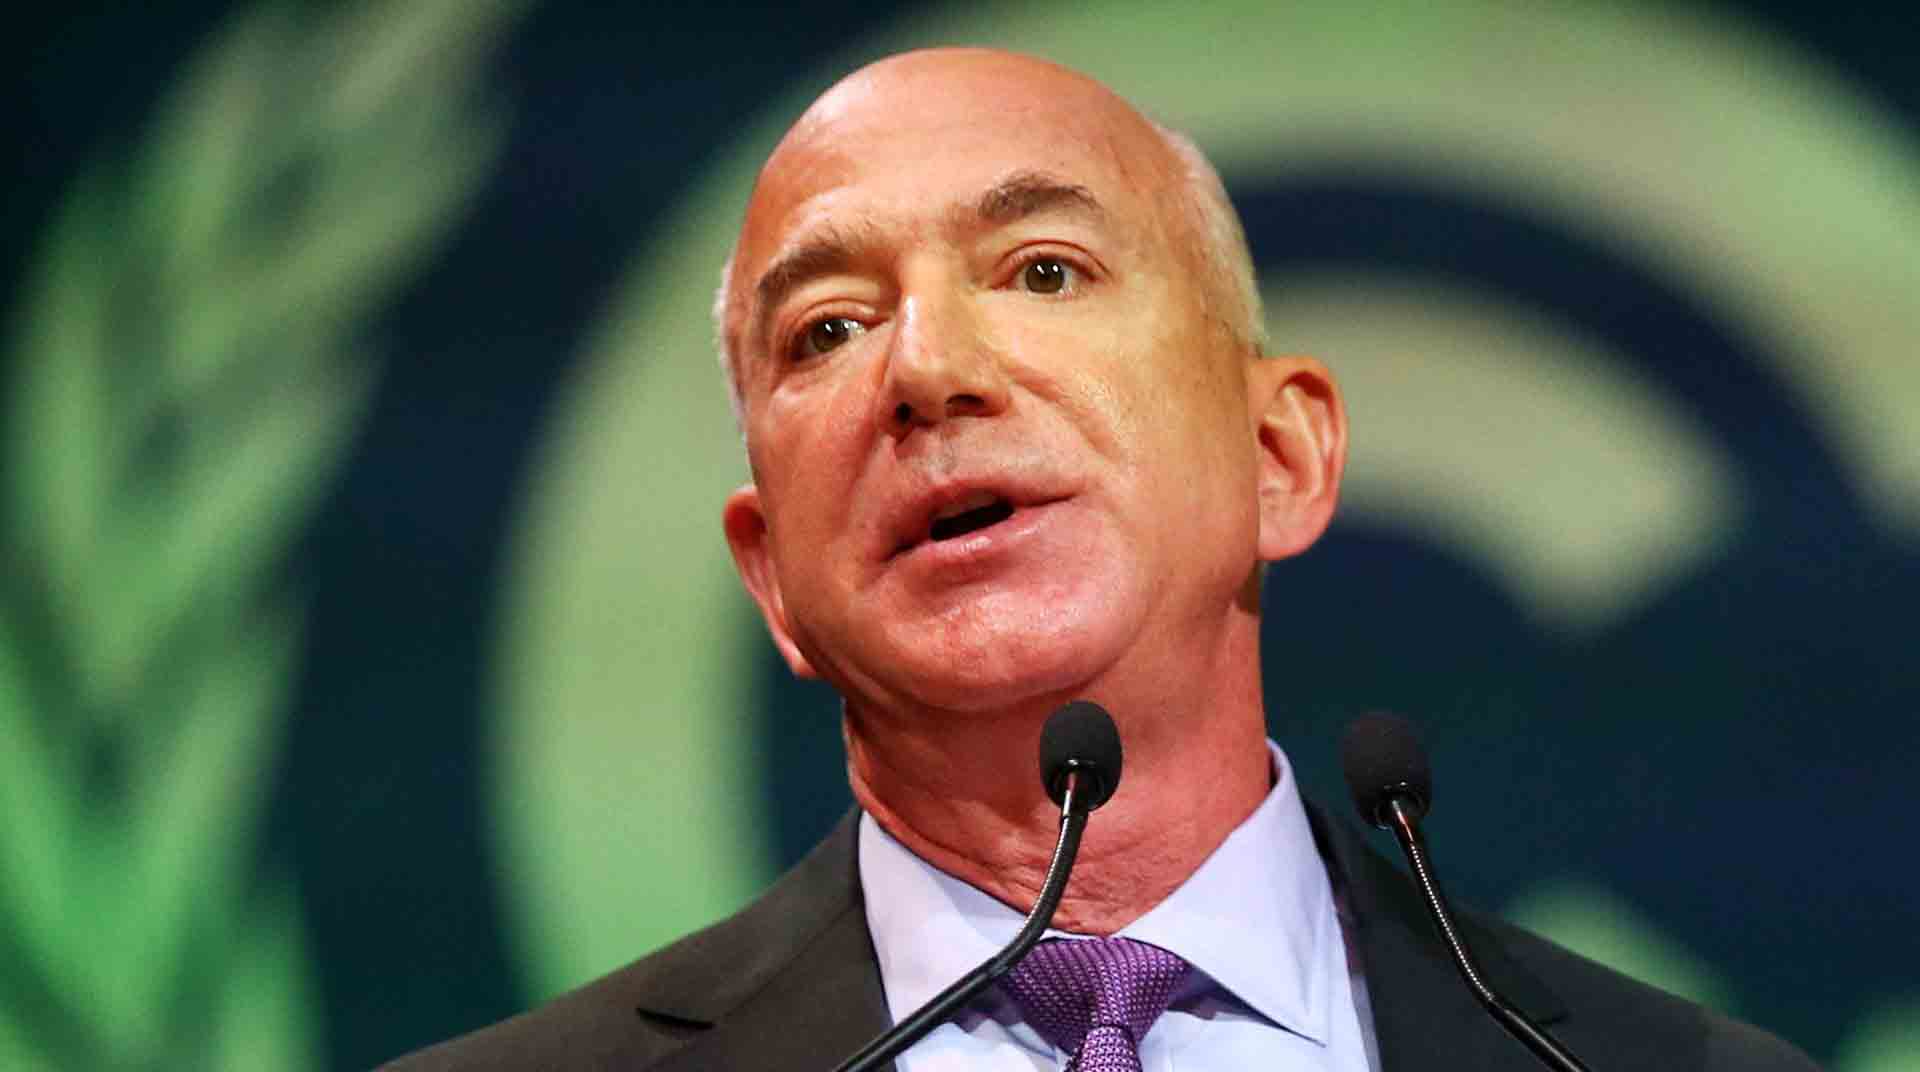 El fundador de Amazon, Jeff Bezos, aseguró al canal estadounidense CNN que planea donar la mayor parte de su patrimonio de USD 124 000 millones. Foto: EFE